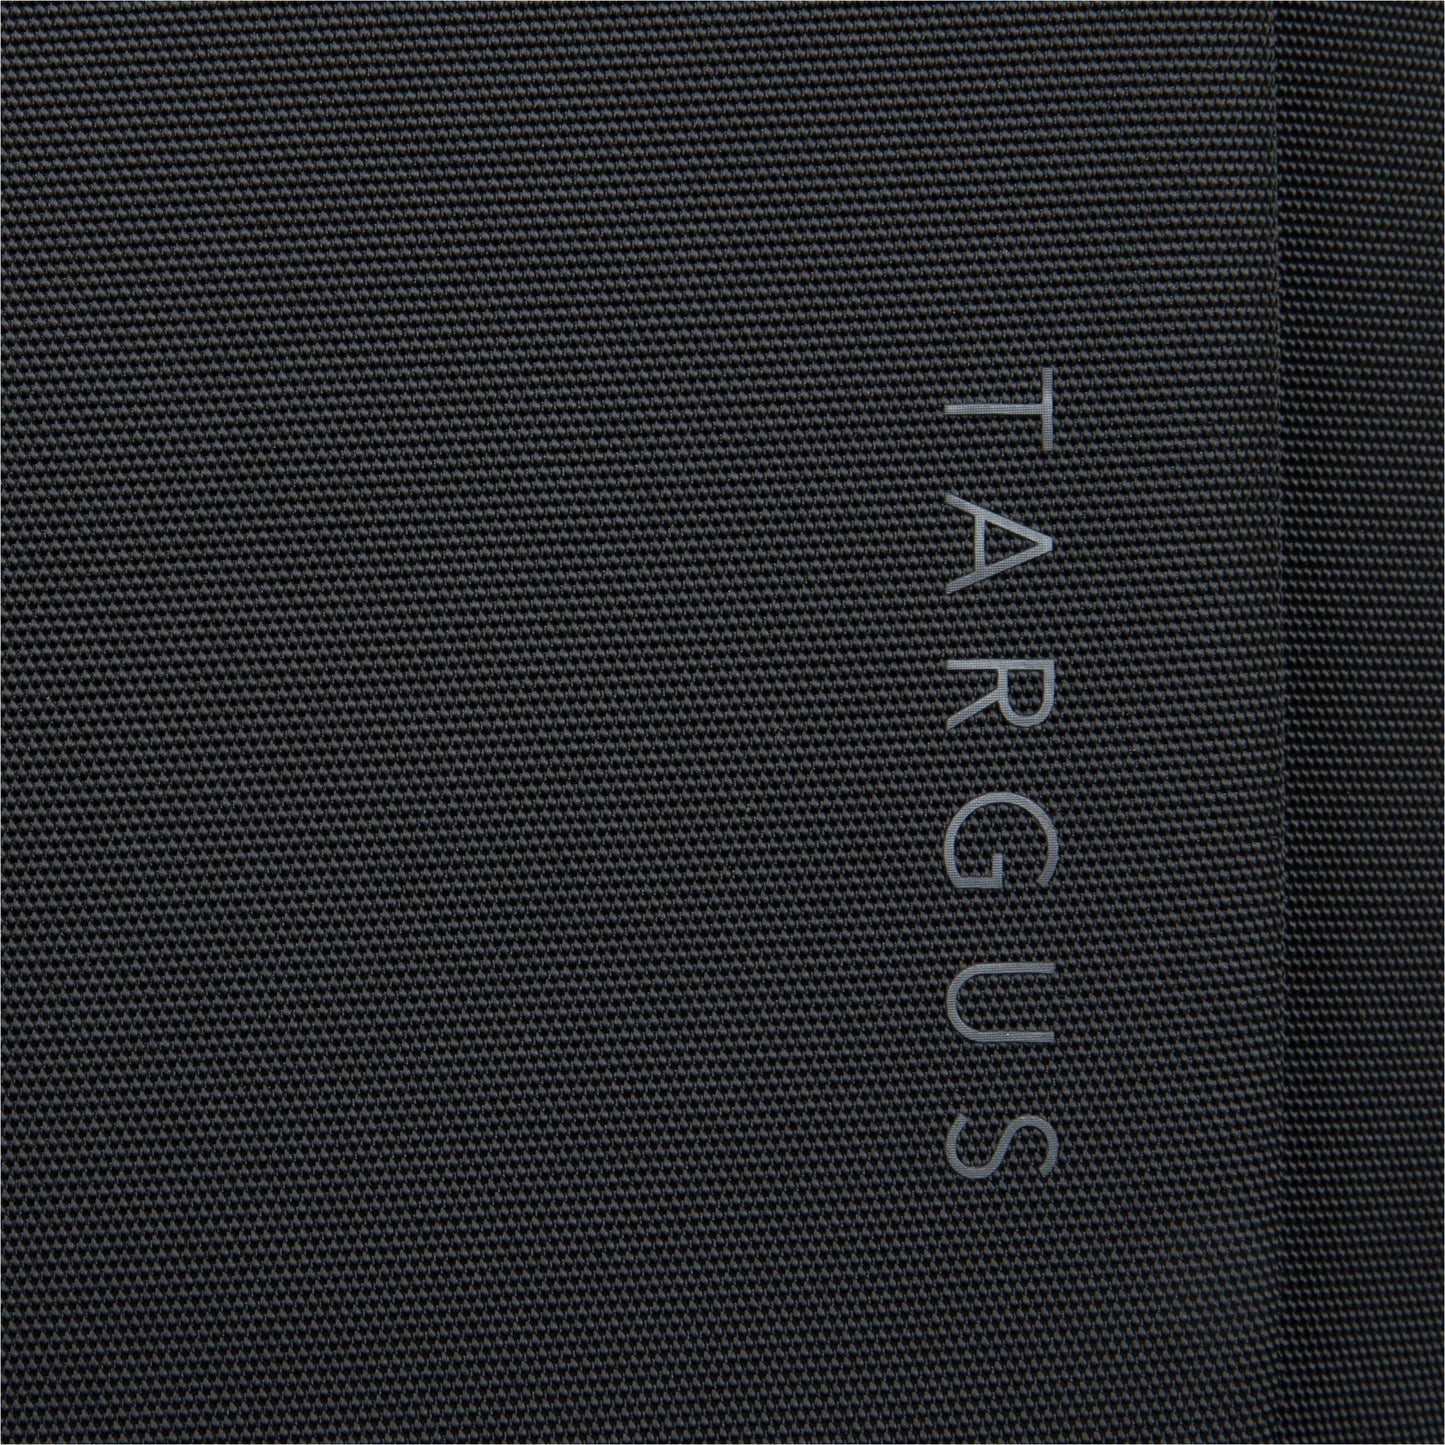 Targus TBB612GL Carrying Case (Backpack) for 15.6" Notebook - Black